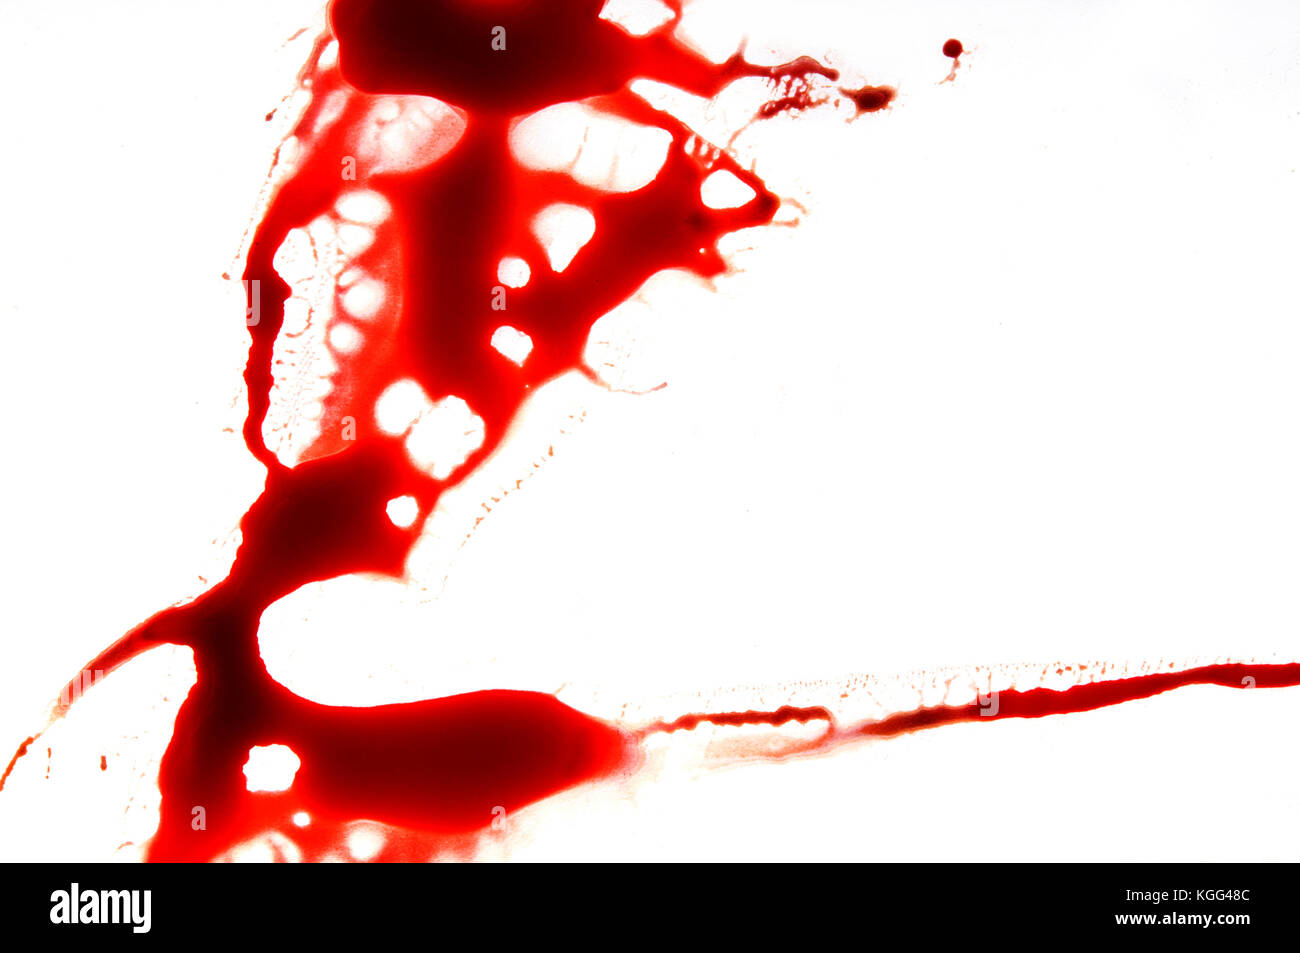 blood splatter on white Stock Photo